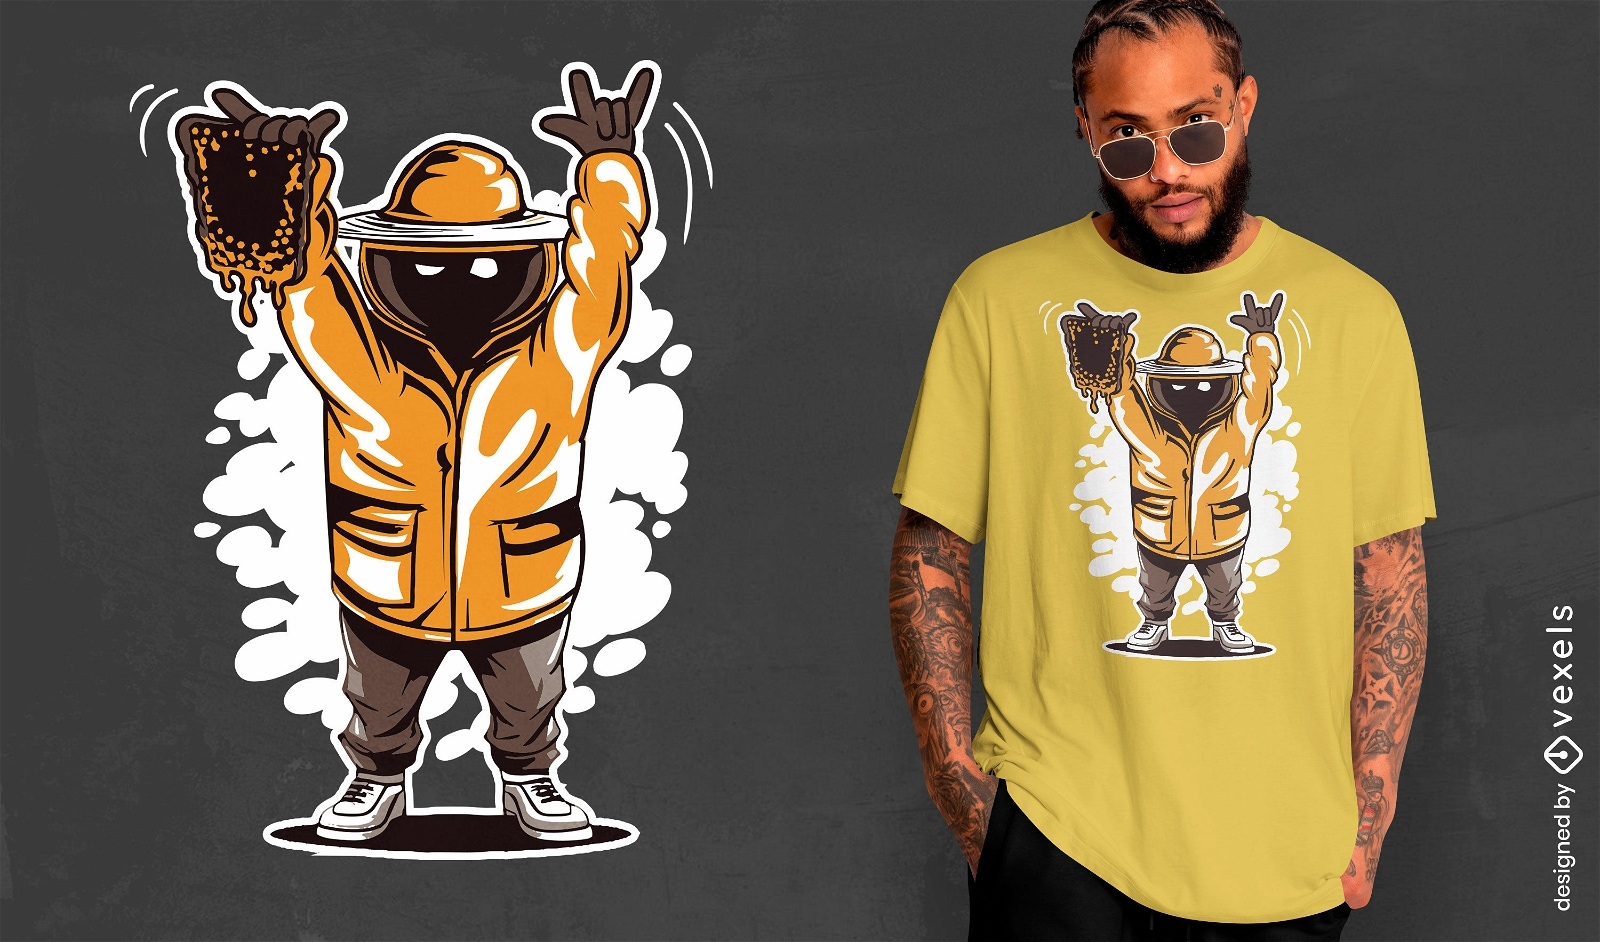 Gangster beekeeper t-shirt design